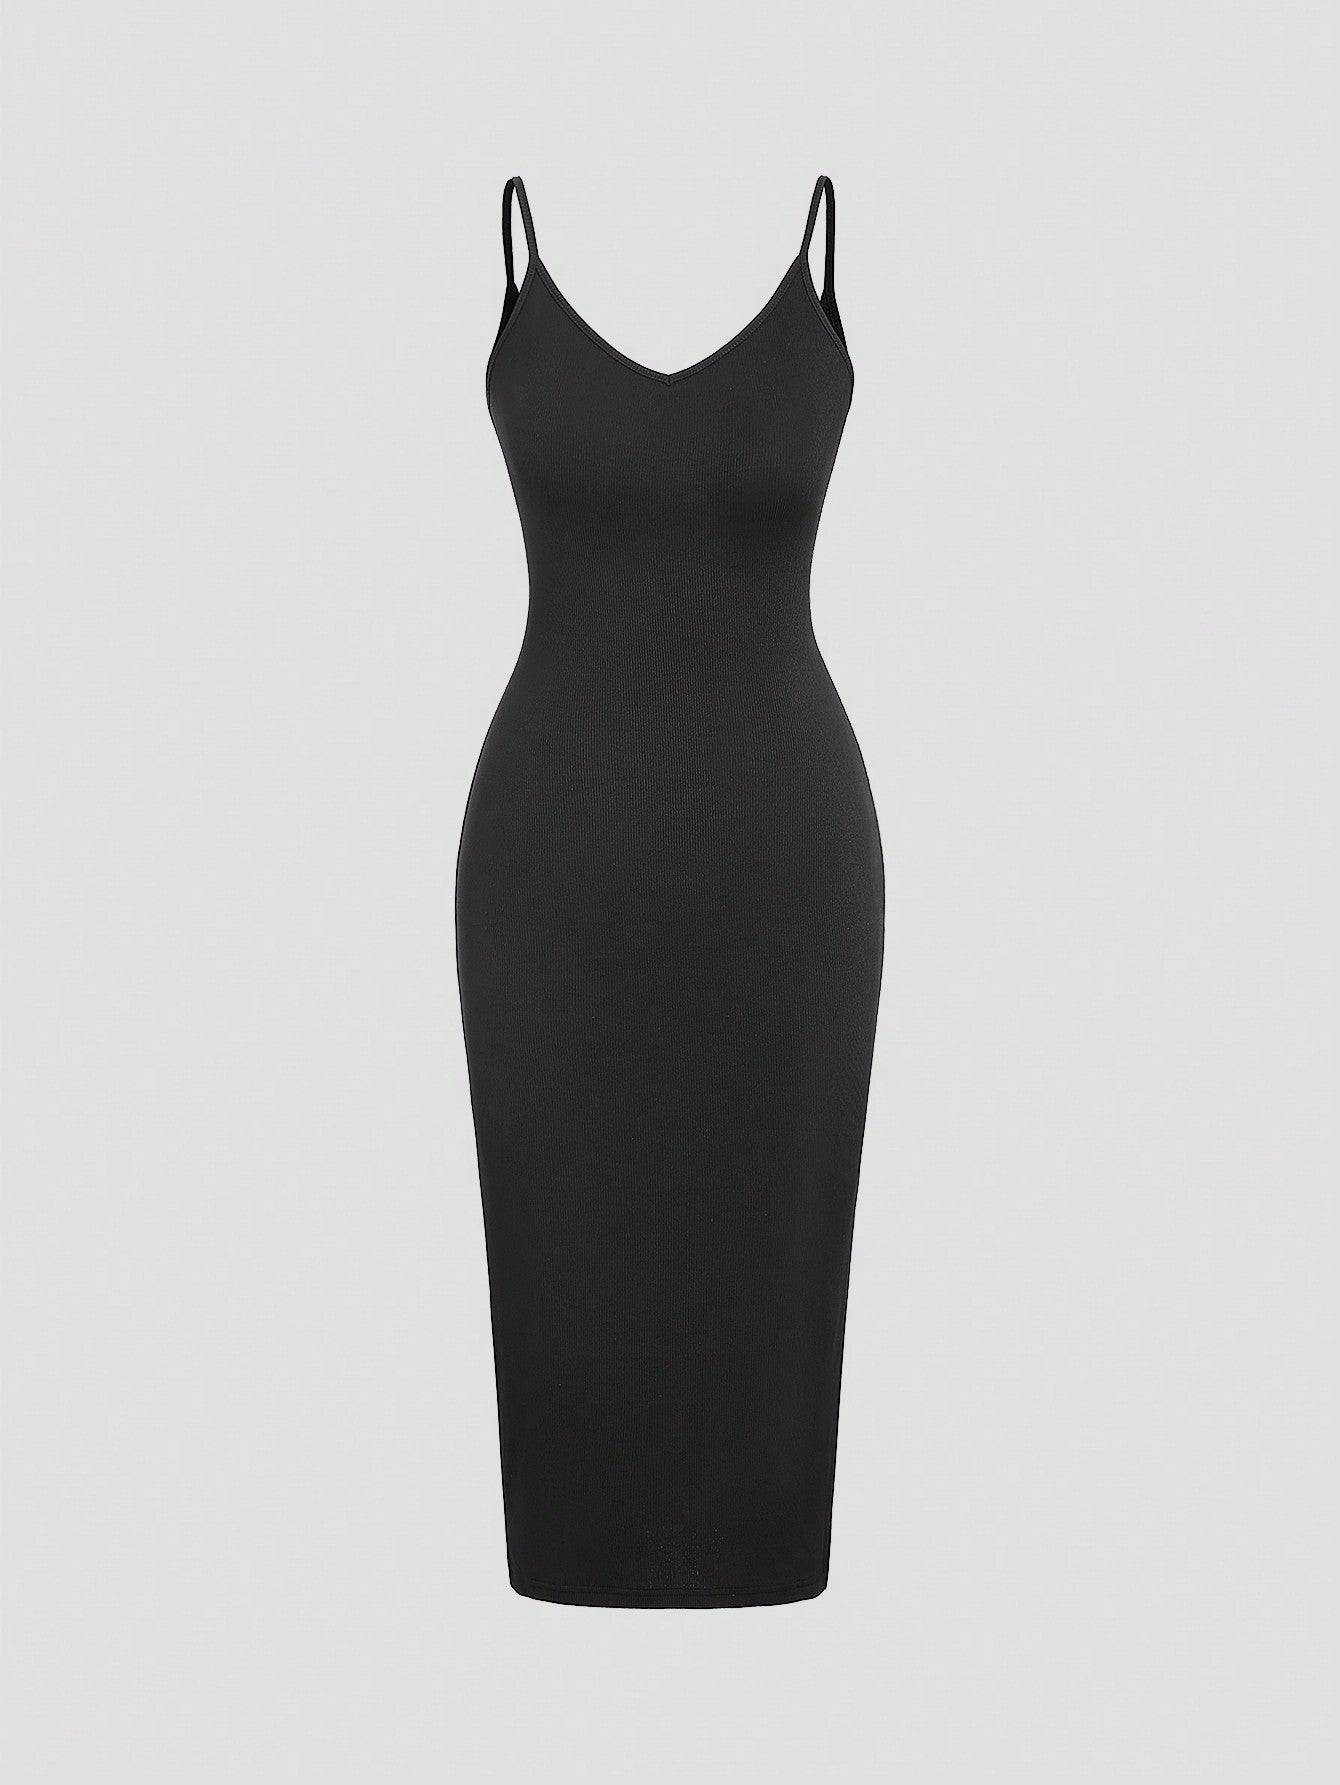 Women's Solid Color Slim Fit Spaghetti Strap Dress